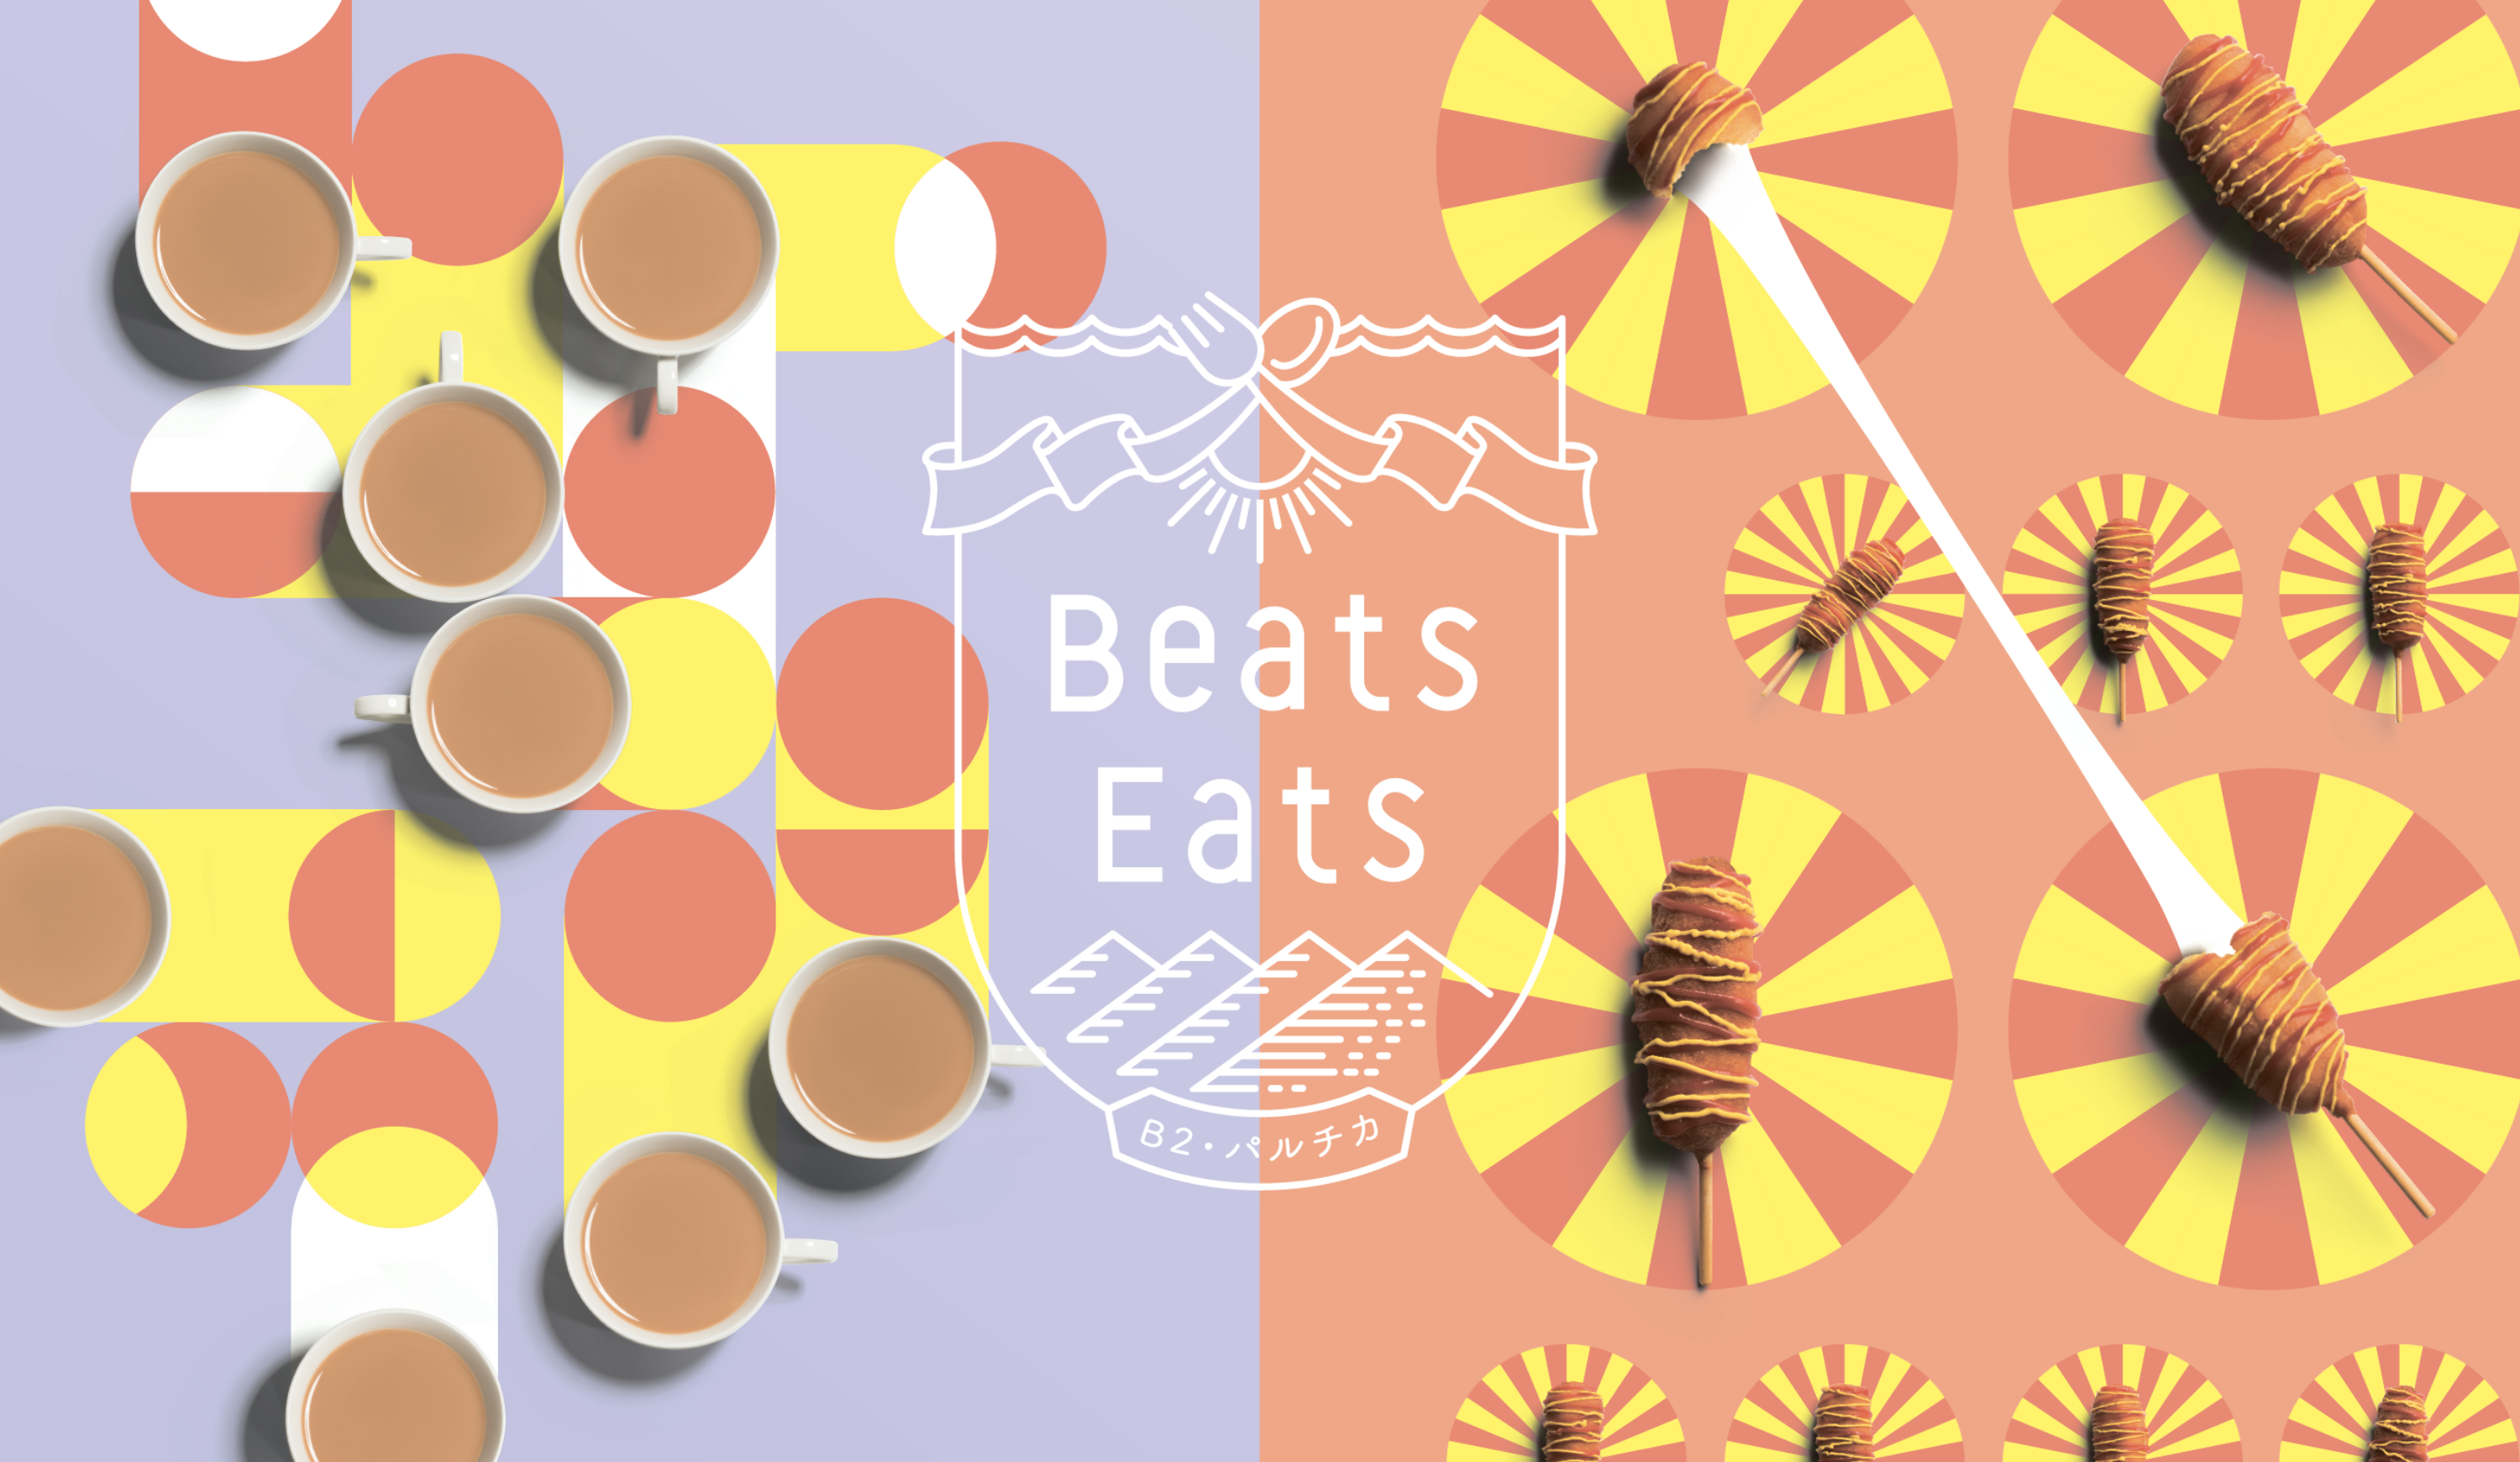 Beats Eats